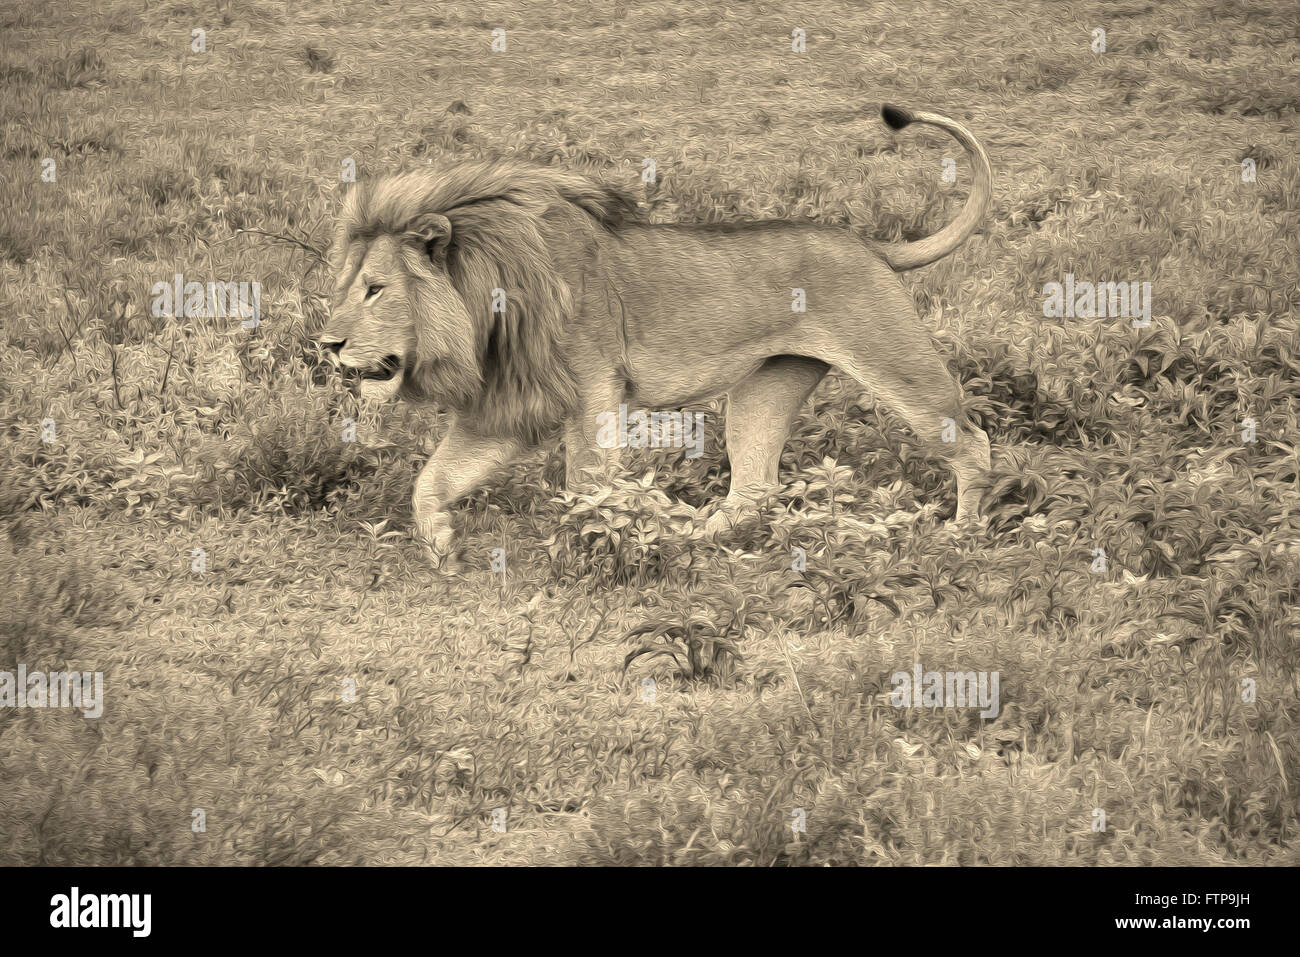 Male lion walking, Ngorongoro Conservation Area (Ndutu), Tanzania Stock Photo